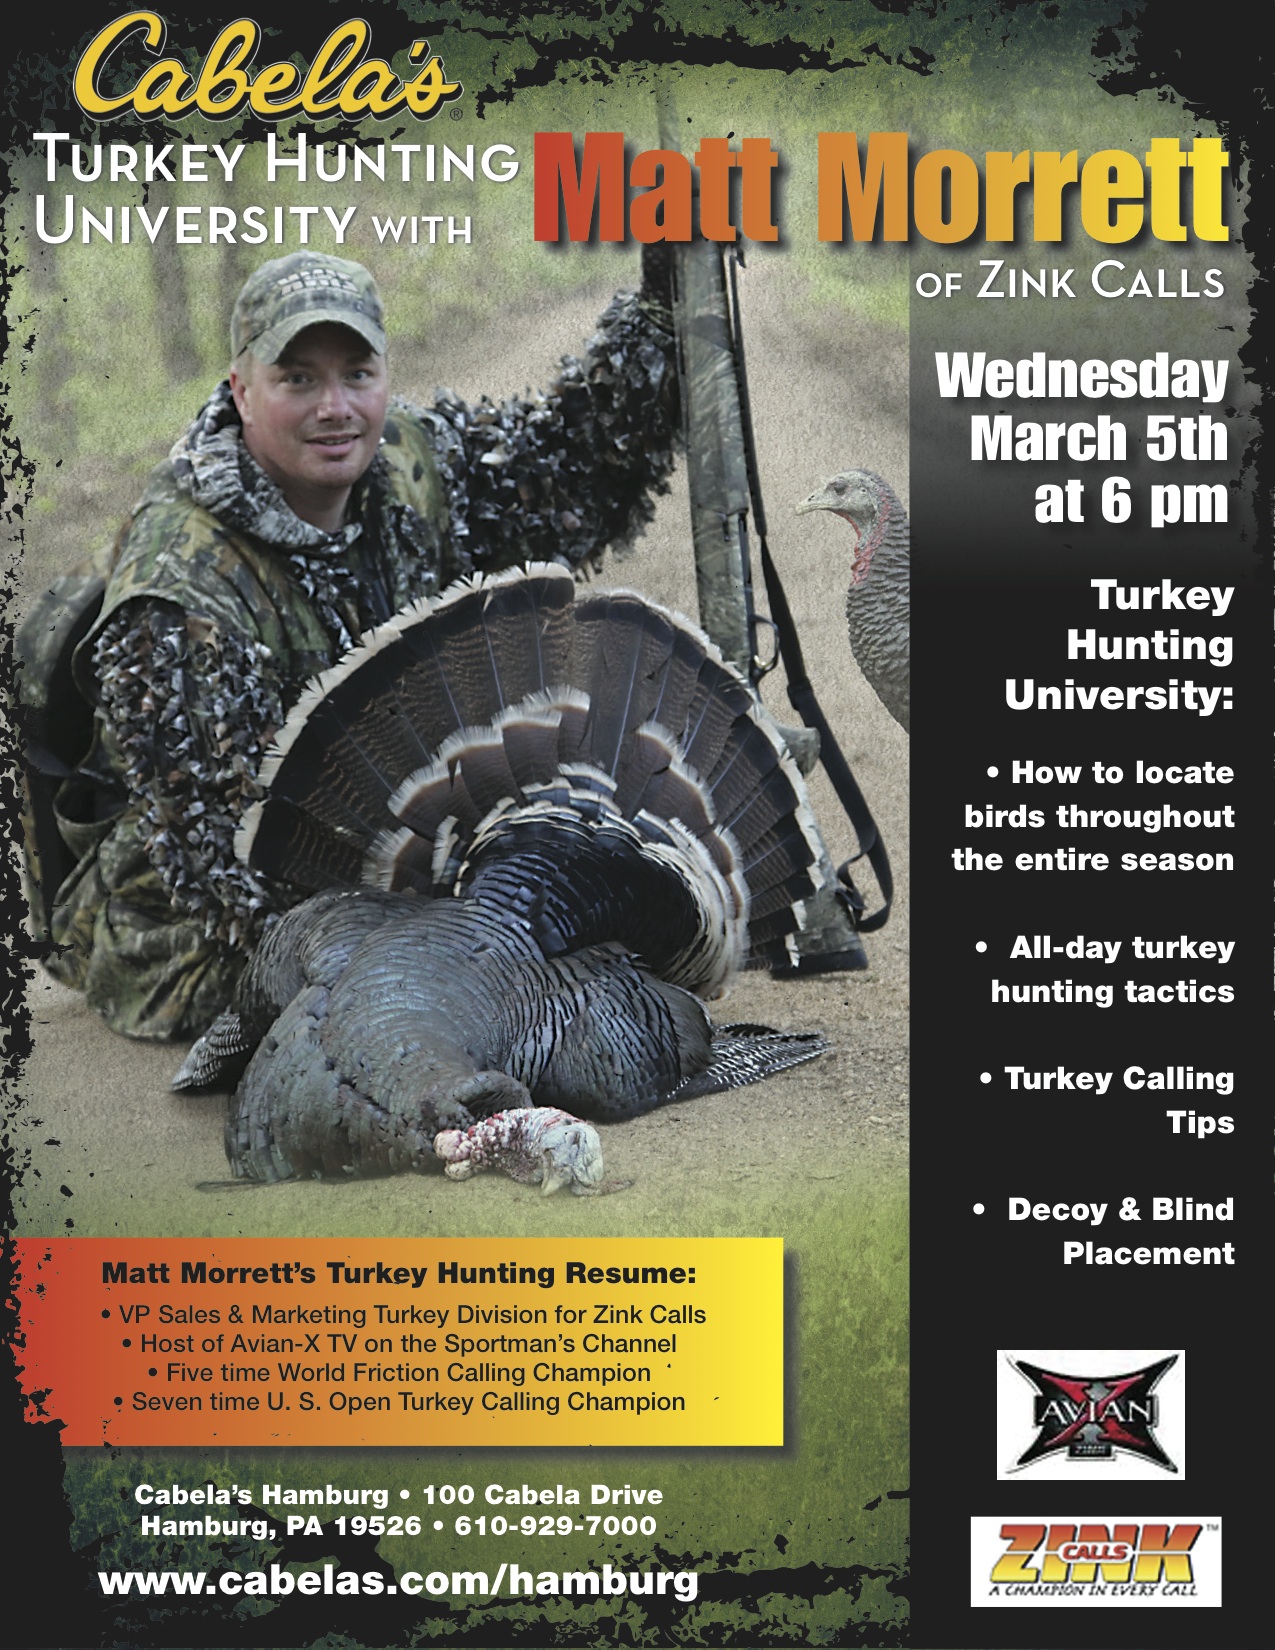 Cabelas Turkey Hunting University with Matt Morrett - March 2014